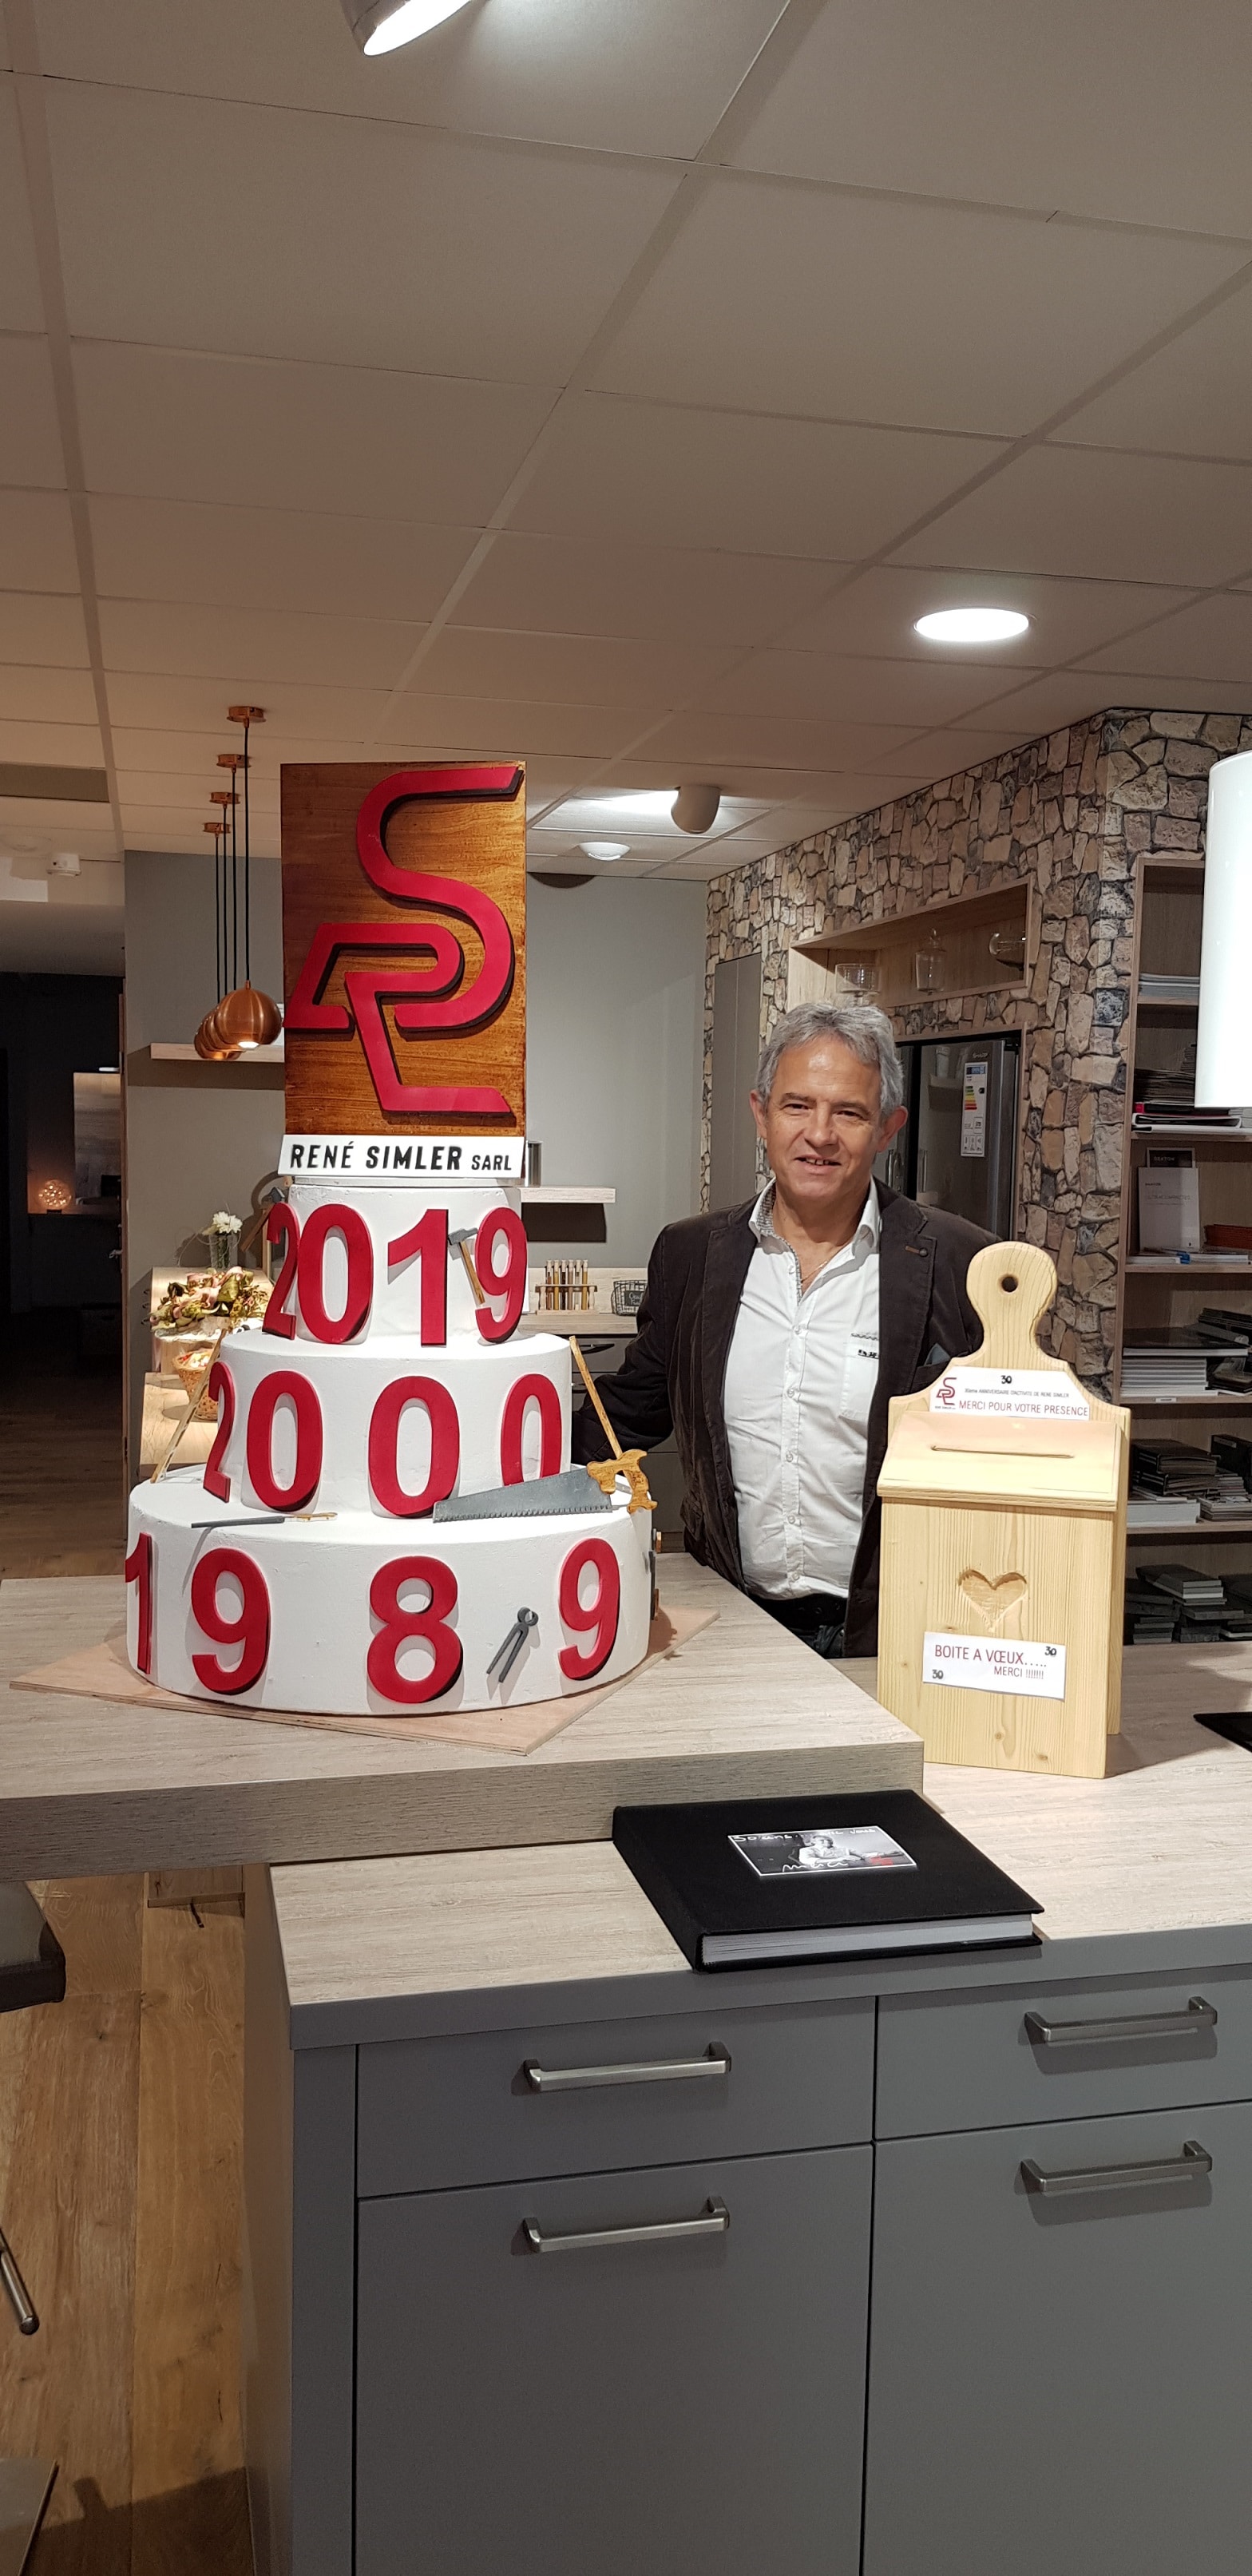 20191026 083037 - 30ème anniversaire de Simler René Sarl